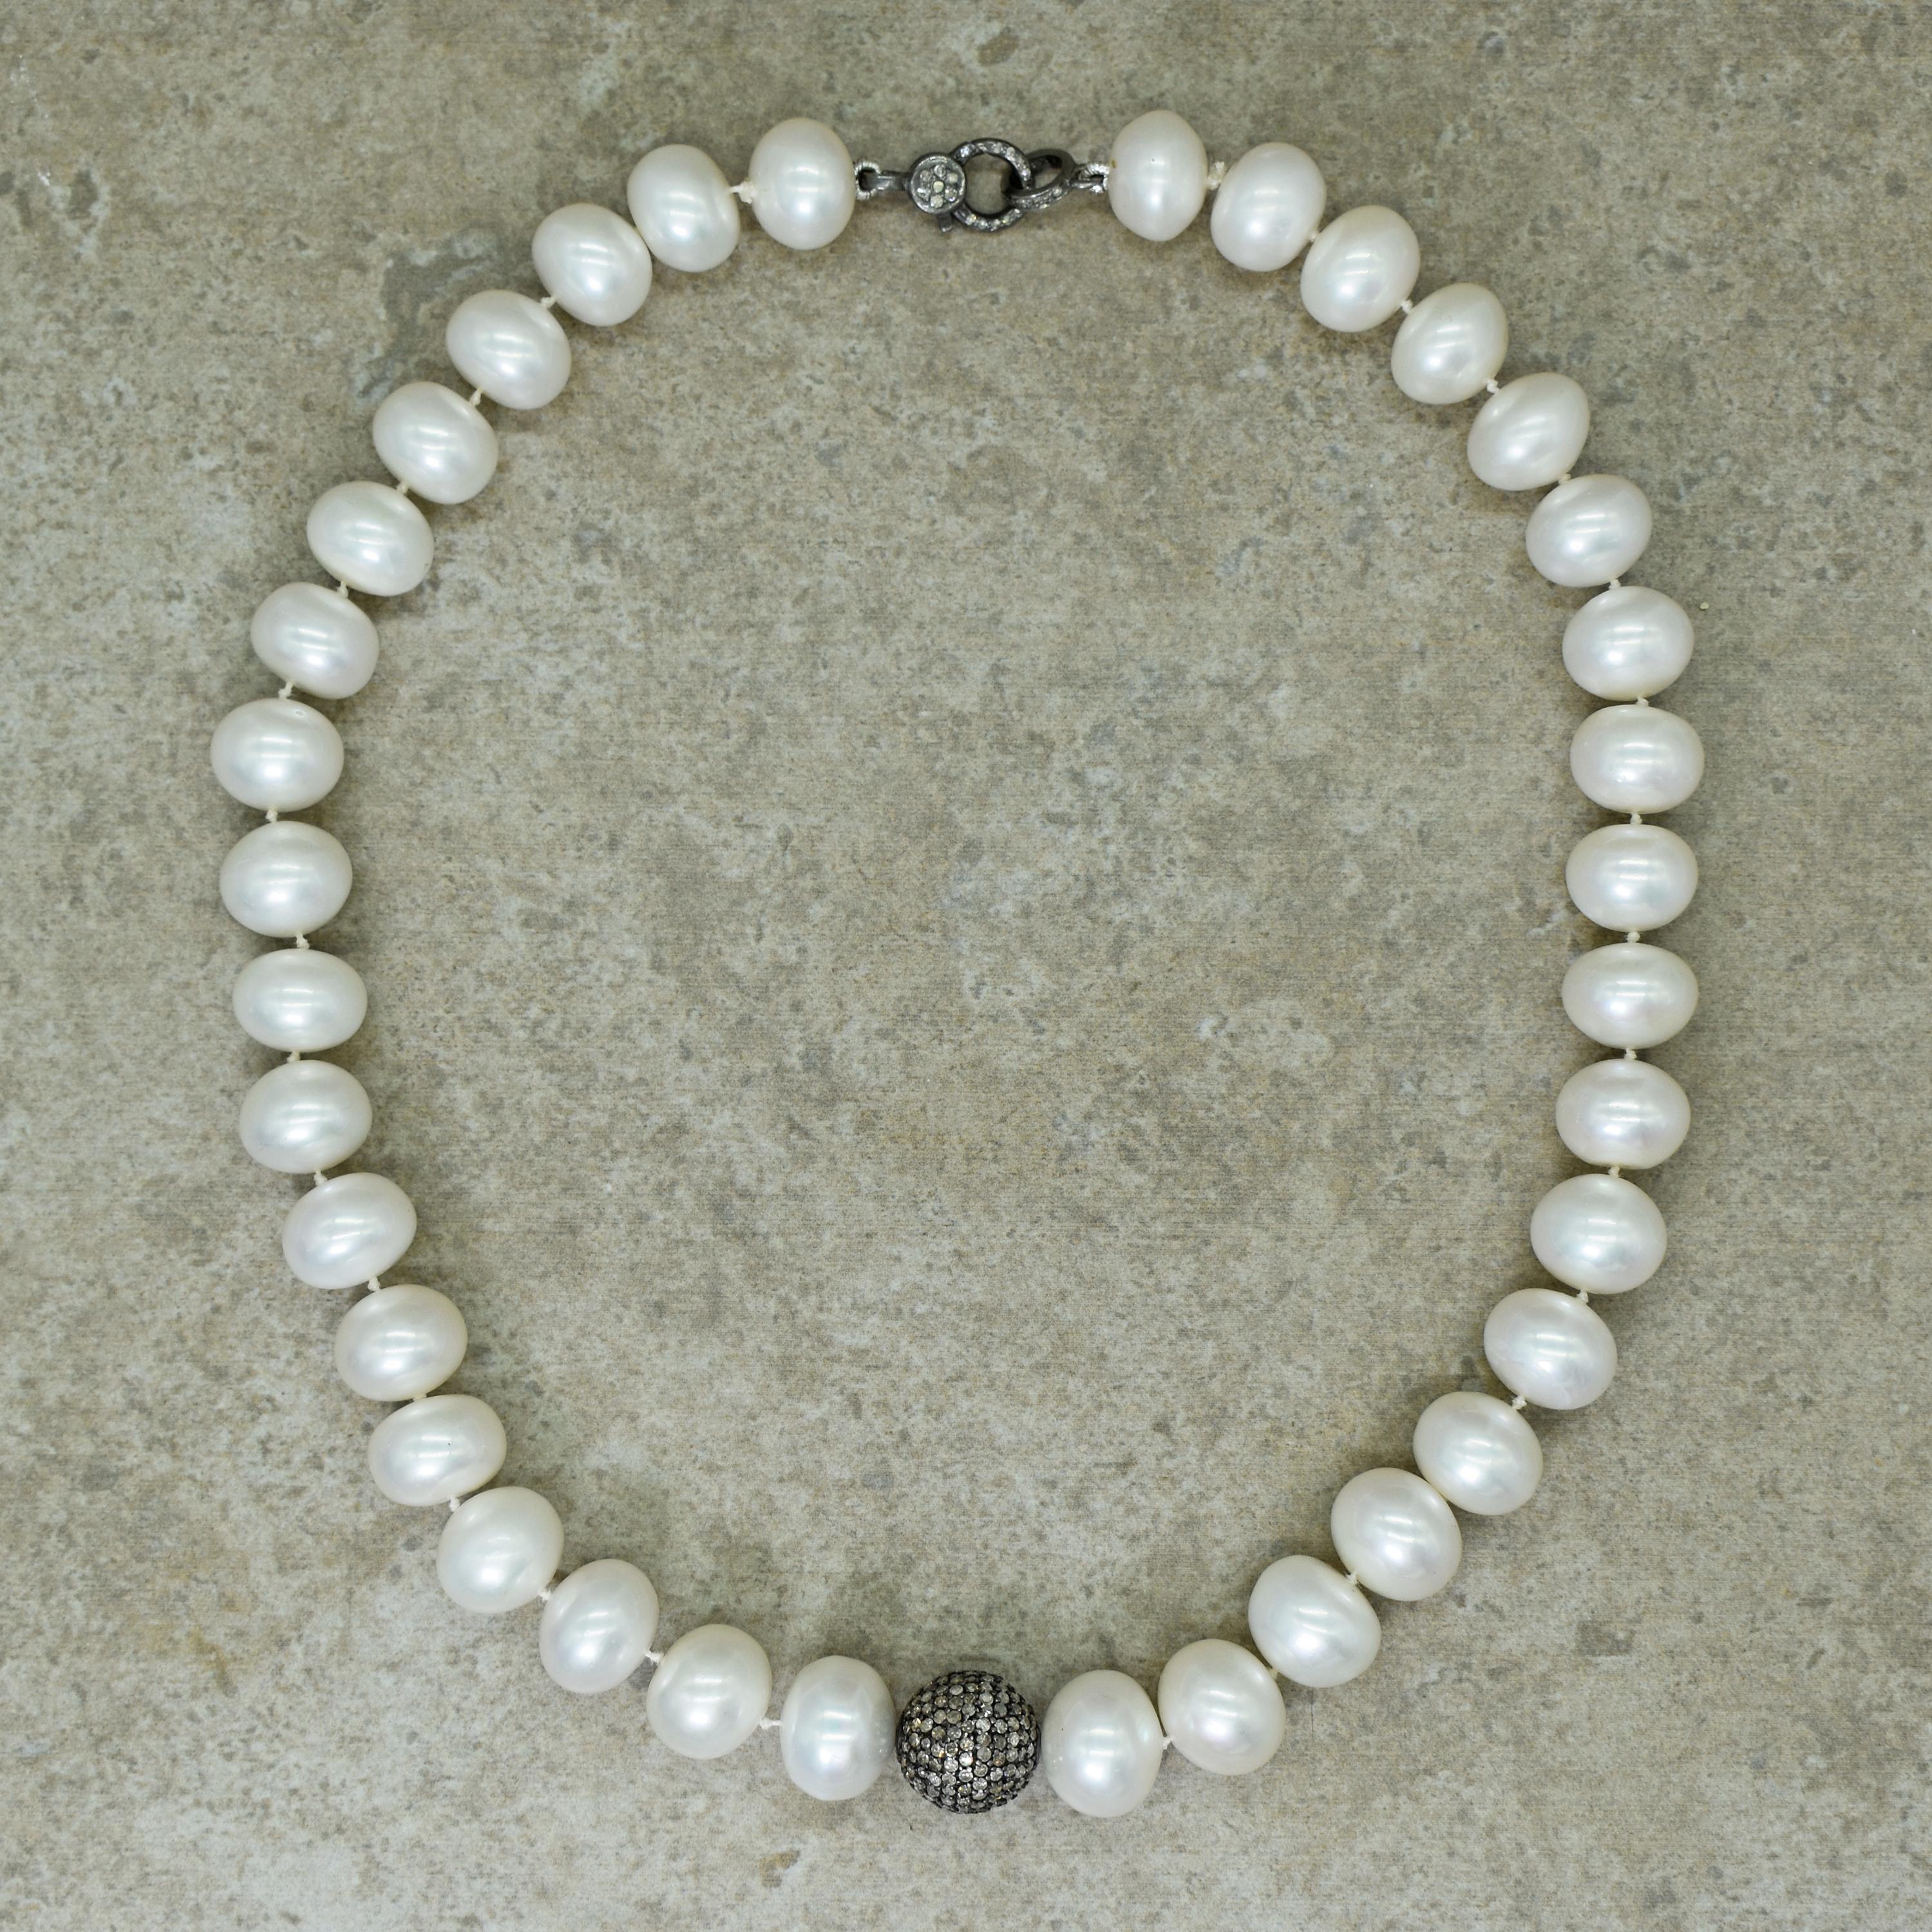 Fil noué de perles d'eau douce en forme de bouton ou de rondelle avec perle centrale et fermoir en argent sterling oxydé pavé de diamants. Le collier mesure 18 pouces de long et les perles ont une largeur d'environ 13-14 mm. Brin de perles